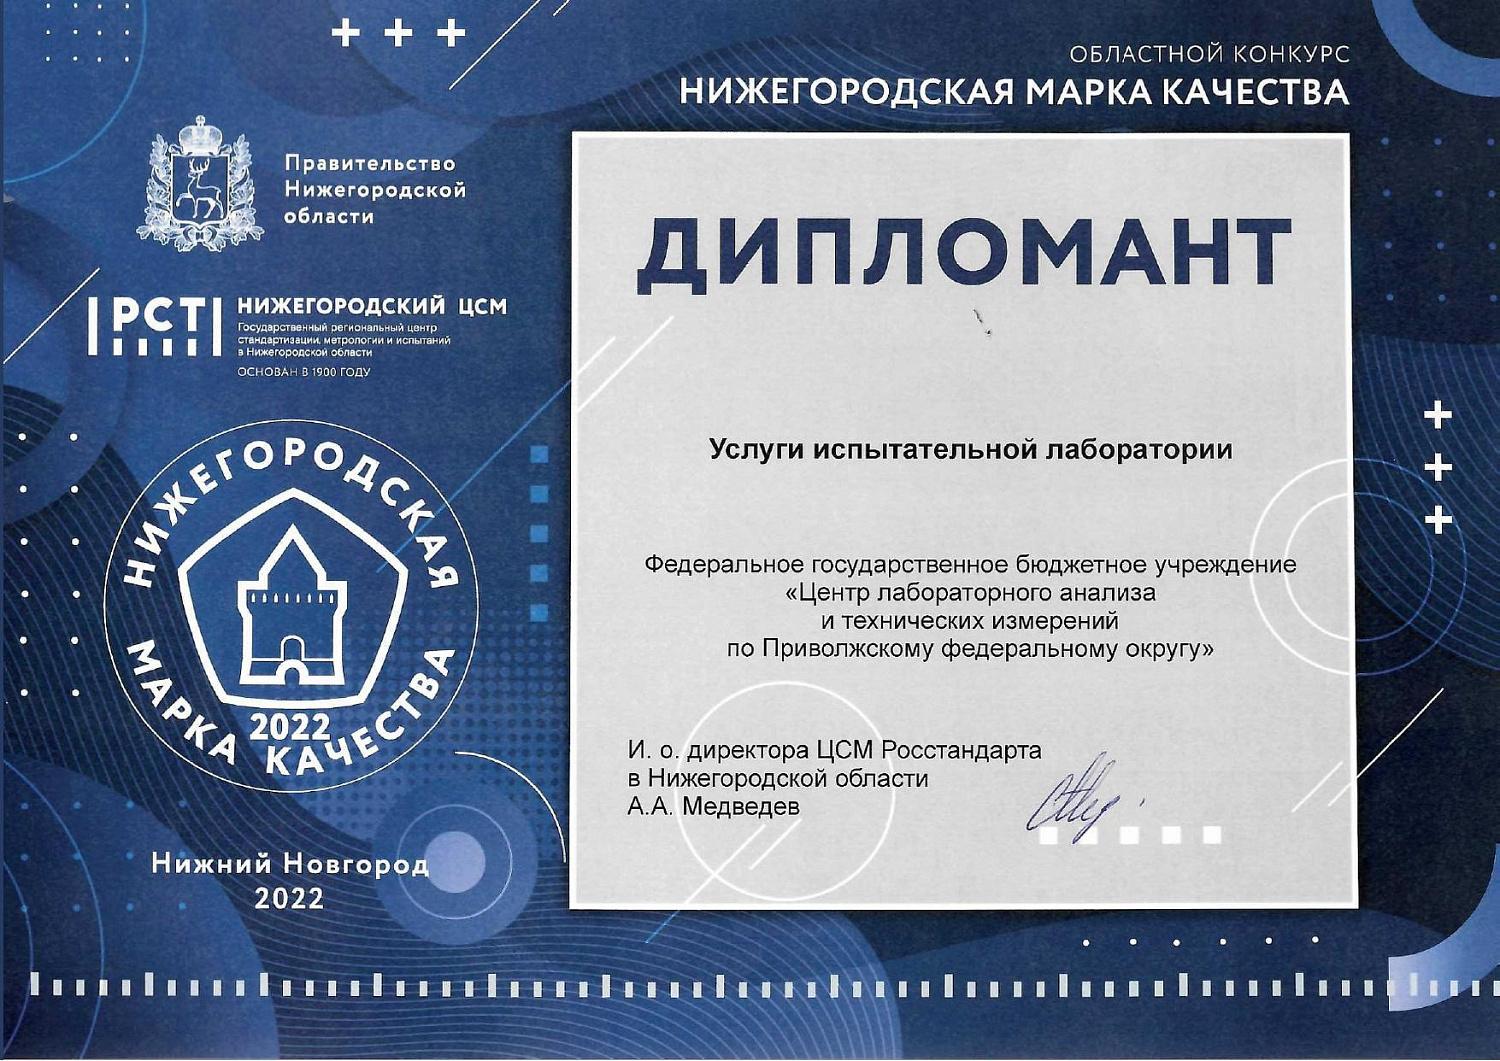 ЦЛАТИ по ПФО принял участие в конкурсе «Нижегородская марка качества-2022»